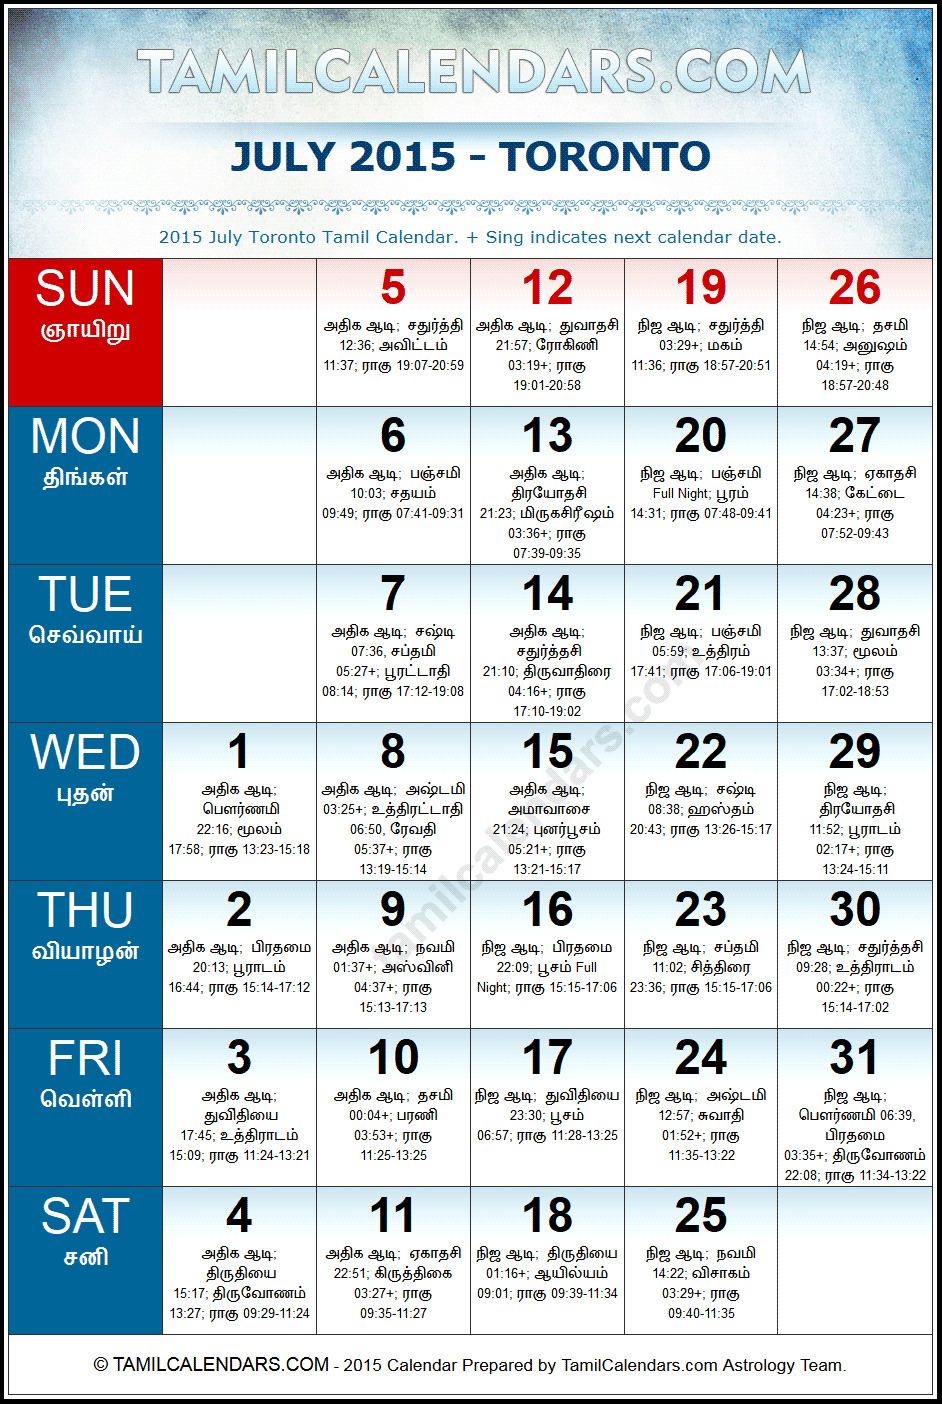 July 2015 Tamil Calendar for Toronto, Canada